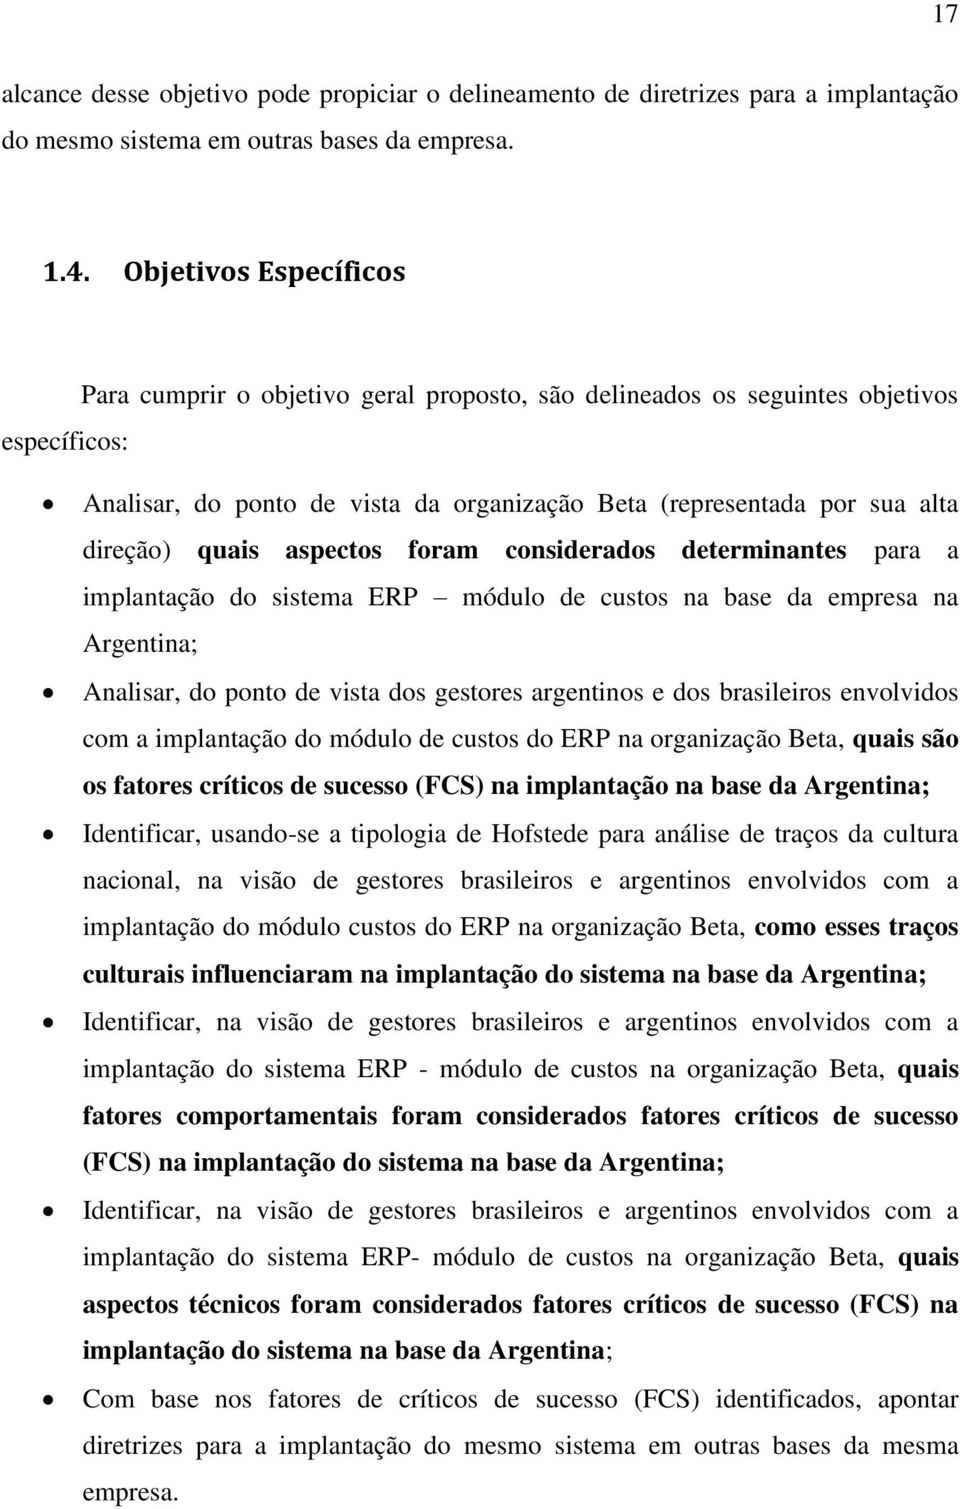 quais aspectos foram considerados determinantes para a implantação do sistema ERP módulo de custos na base da empresa na Argentina; Analisar, do ponto de vista dos gestores argentinos e dos